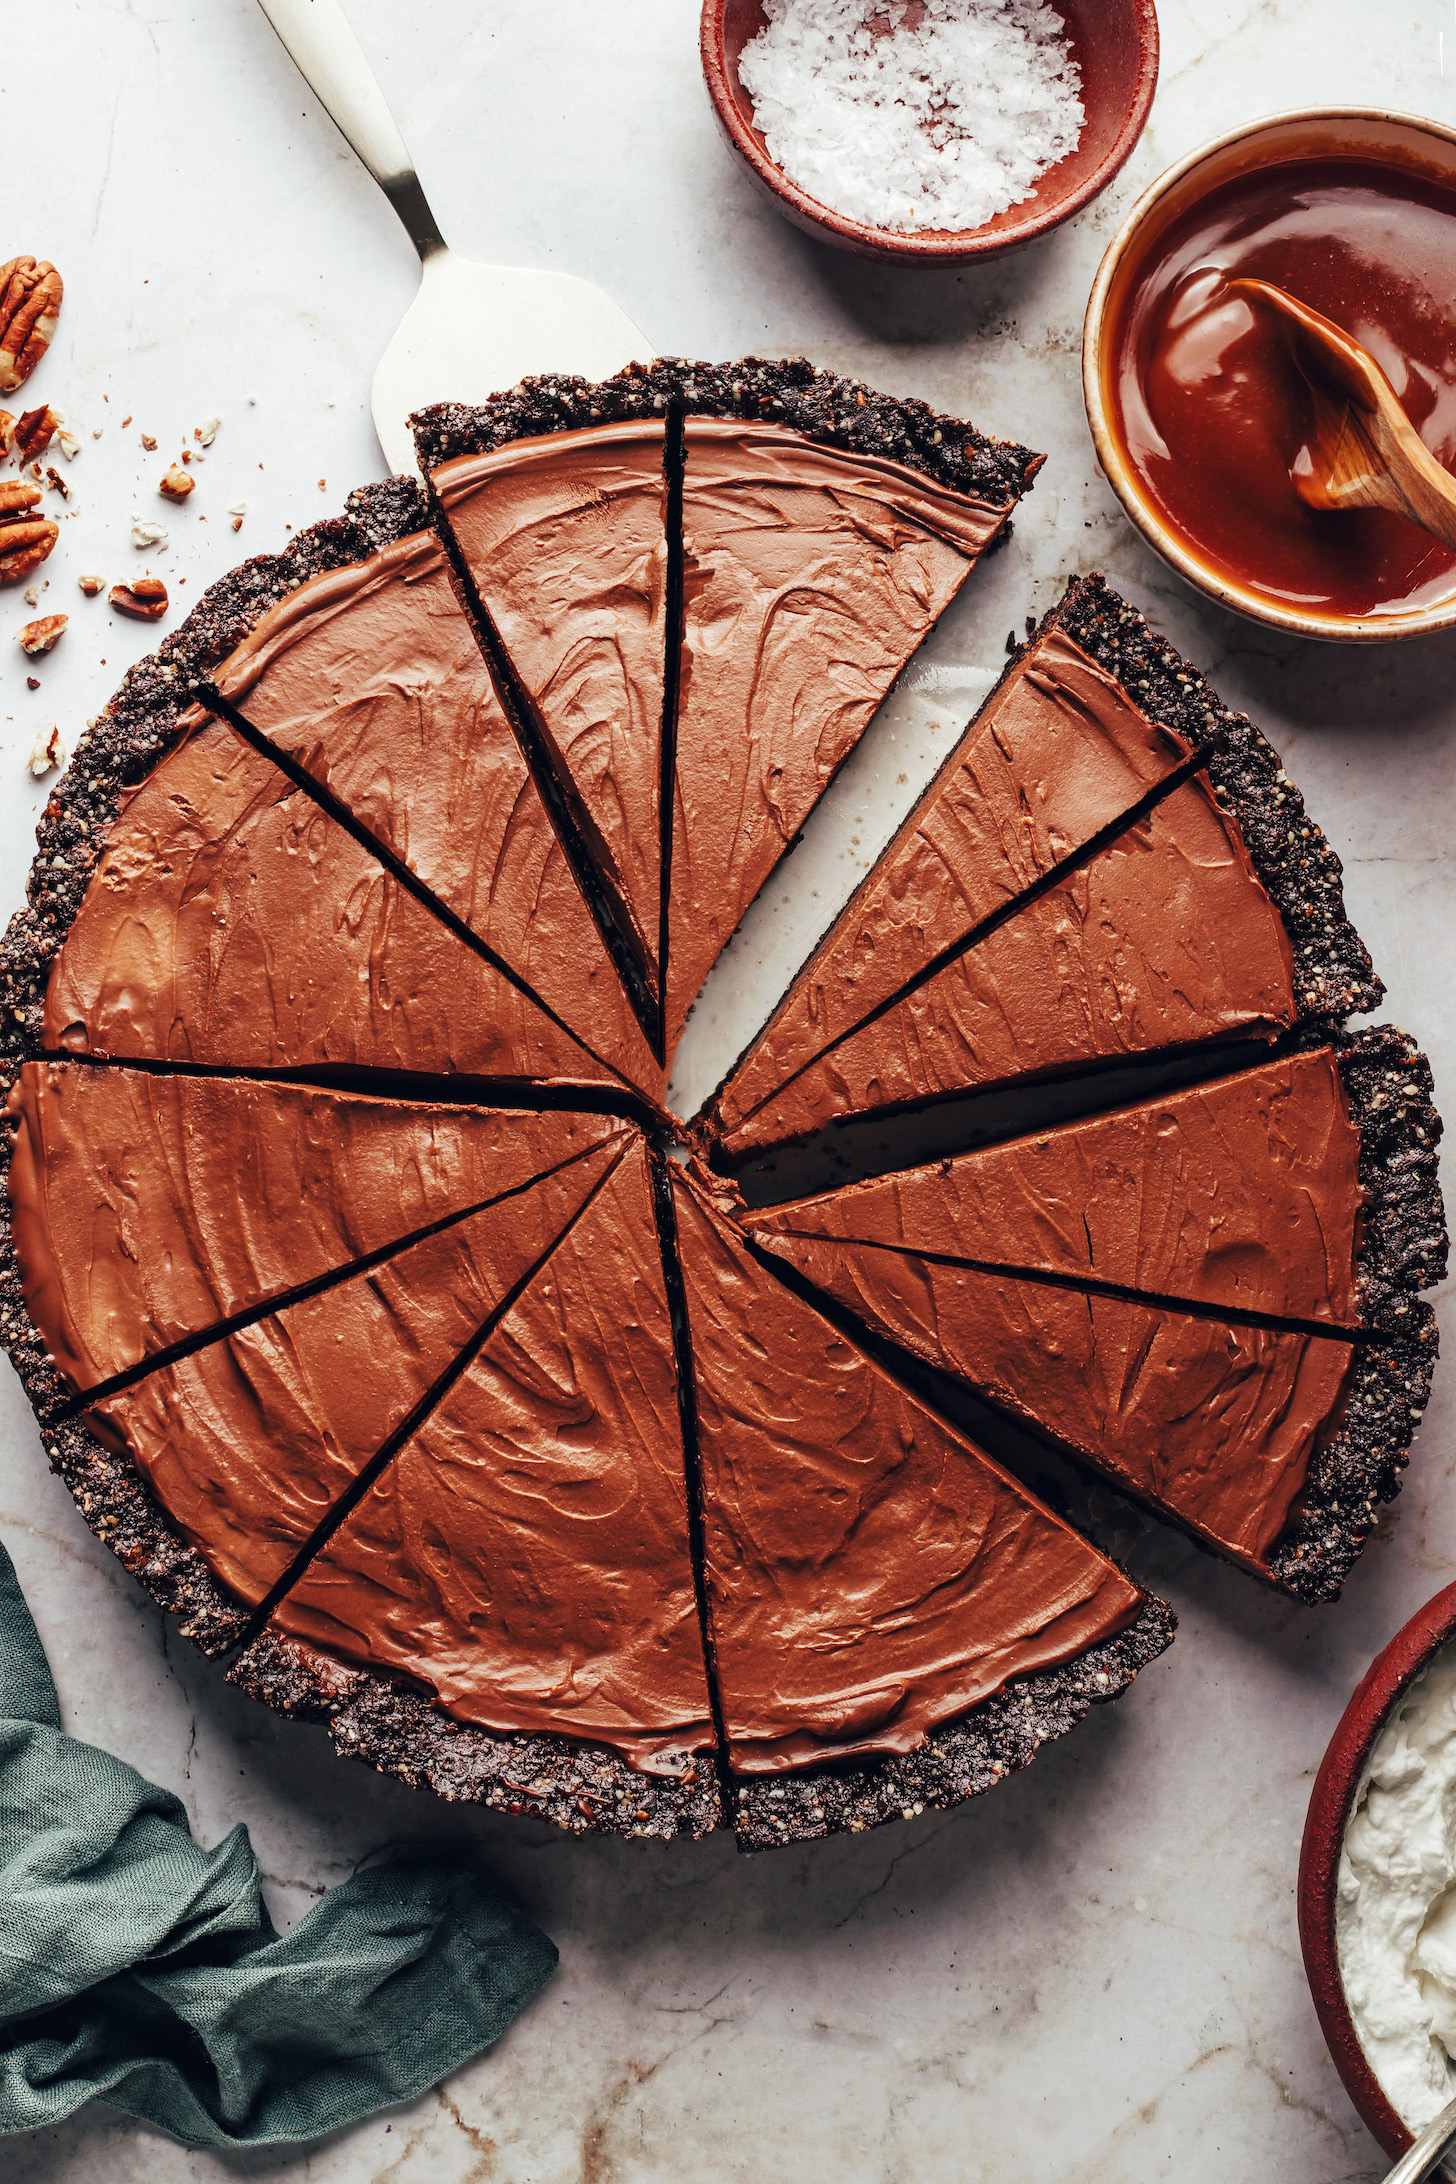 Scheiben unserer doppelten Schokoladenmousse-Torte ohne Backen, umgeben von Zutaten für den Belag